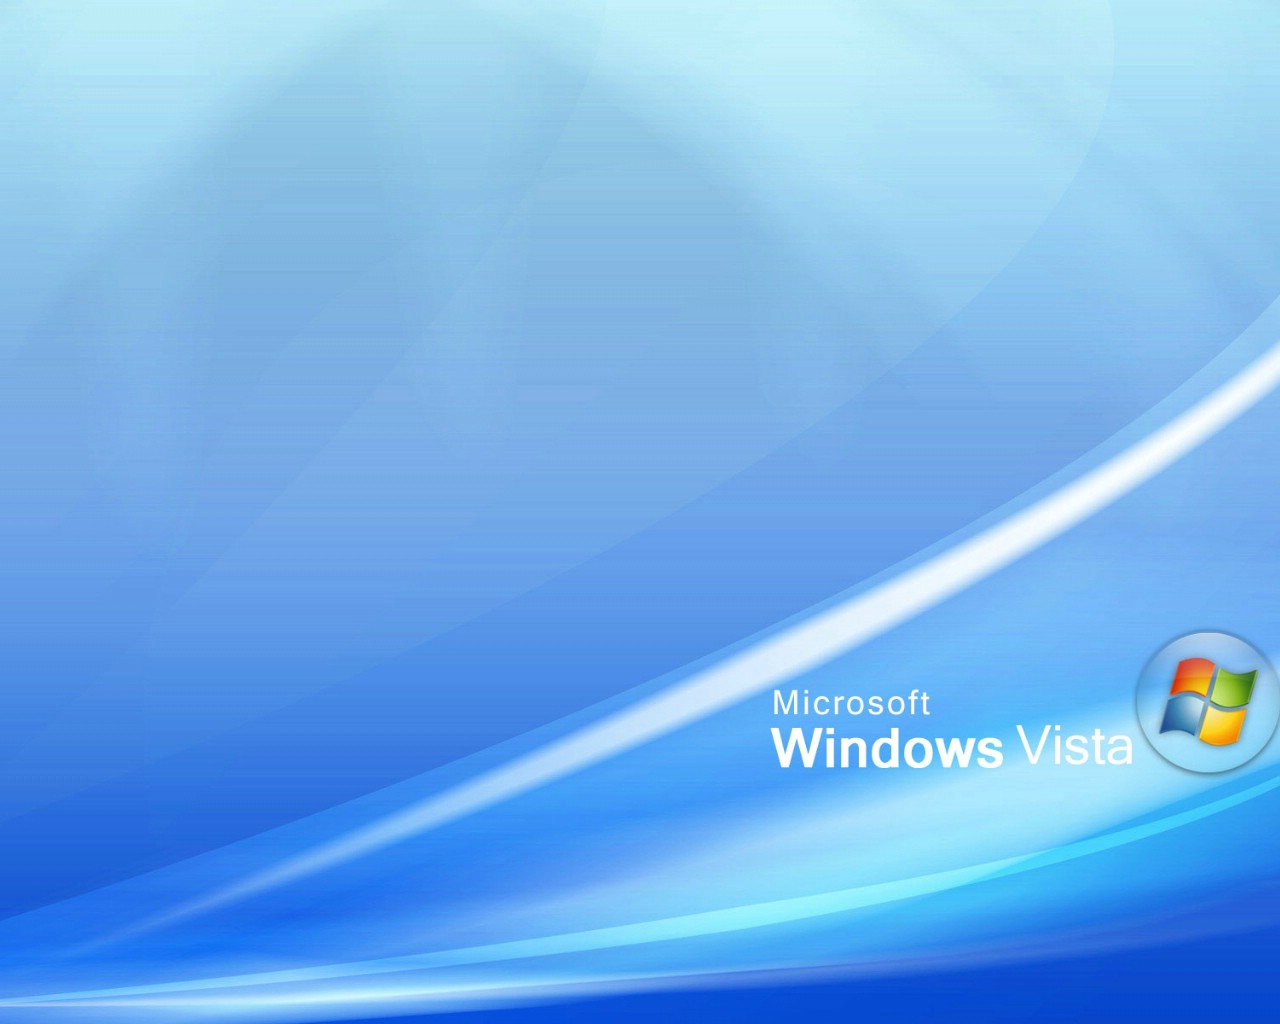 壁纸1280x1024超高分辨率Windows Vista简约壁纸壁纸 超高分辨率Windows Vista简约壁纸壁纸 超高分辨率Windows Vista简约壁纸图片 超高分辨率Windows Vista简约壁纸素材 创意壁纸 创意图库 创意图片素材桌面壁纸